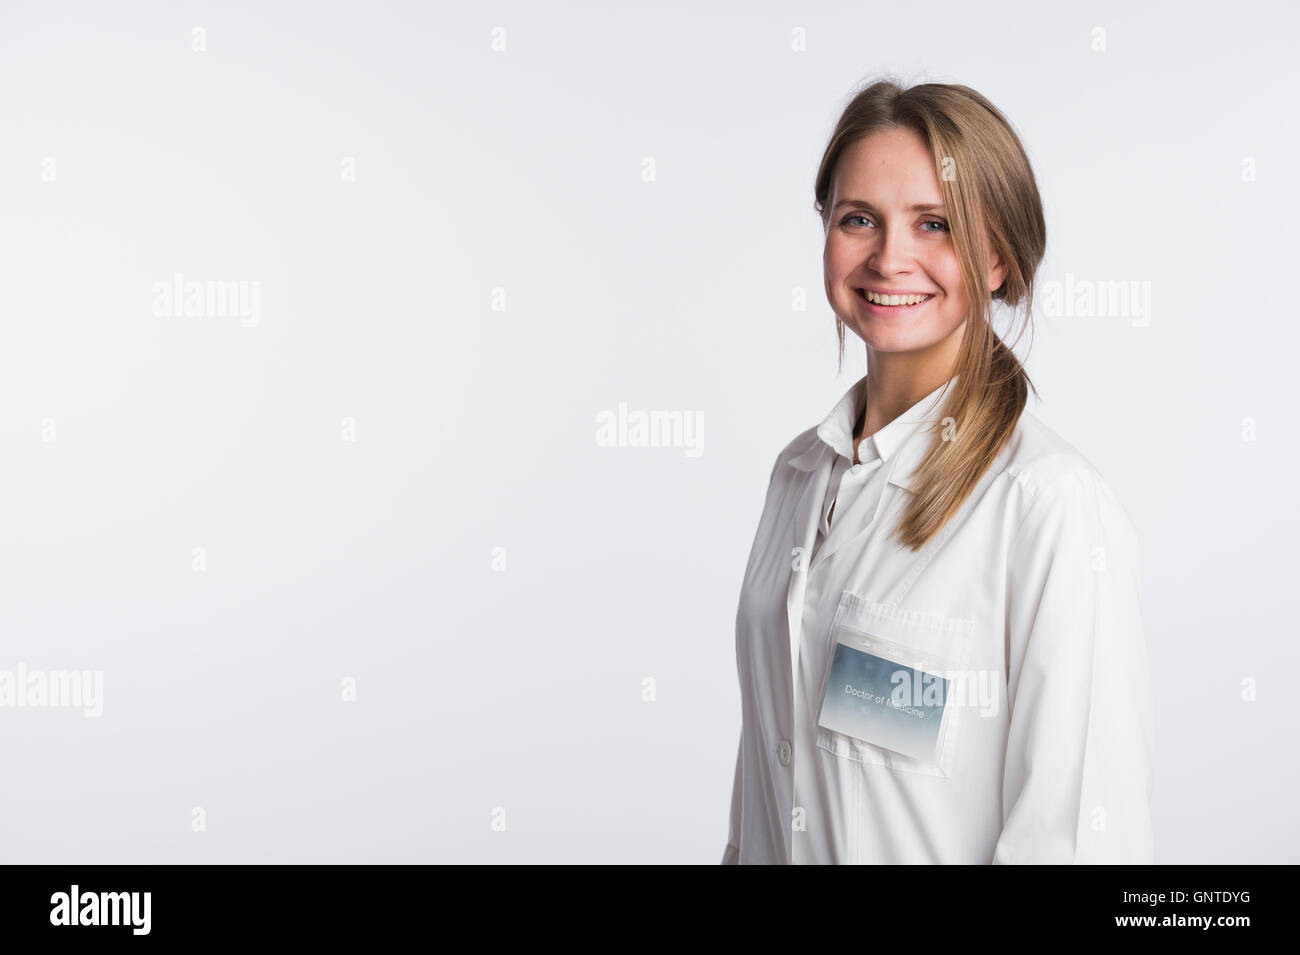 Schöne Krankenschwester Portrait auf weiß mit Textfreiraum Stockfoto